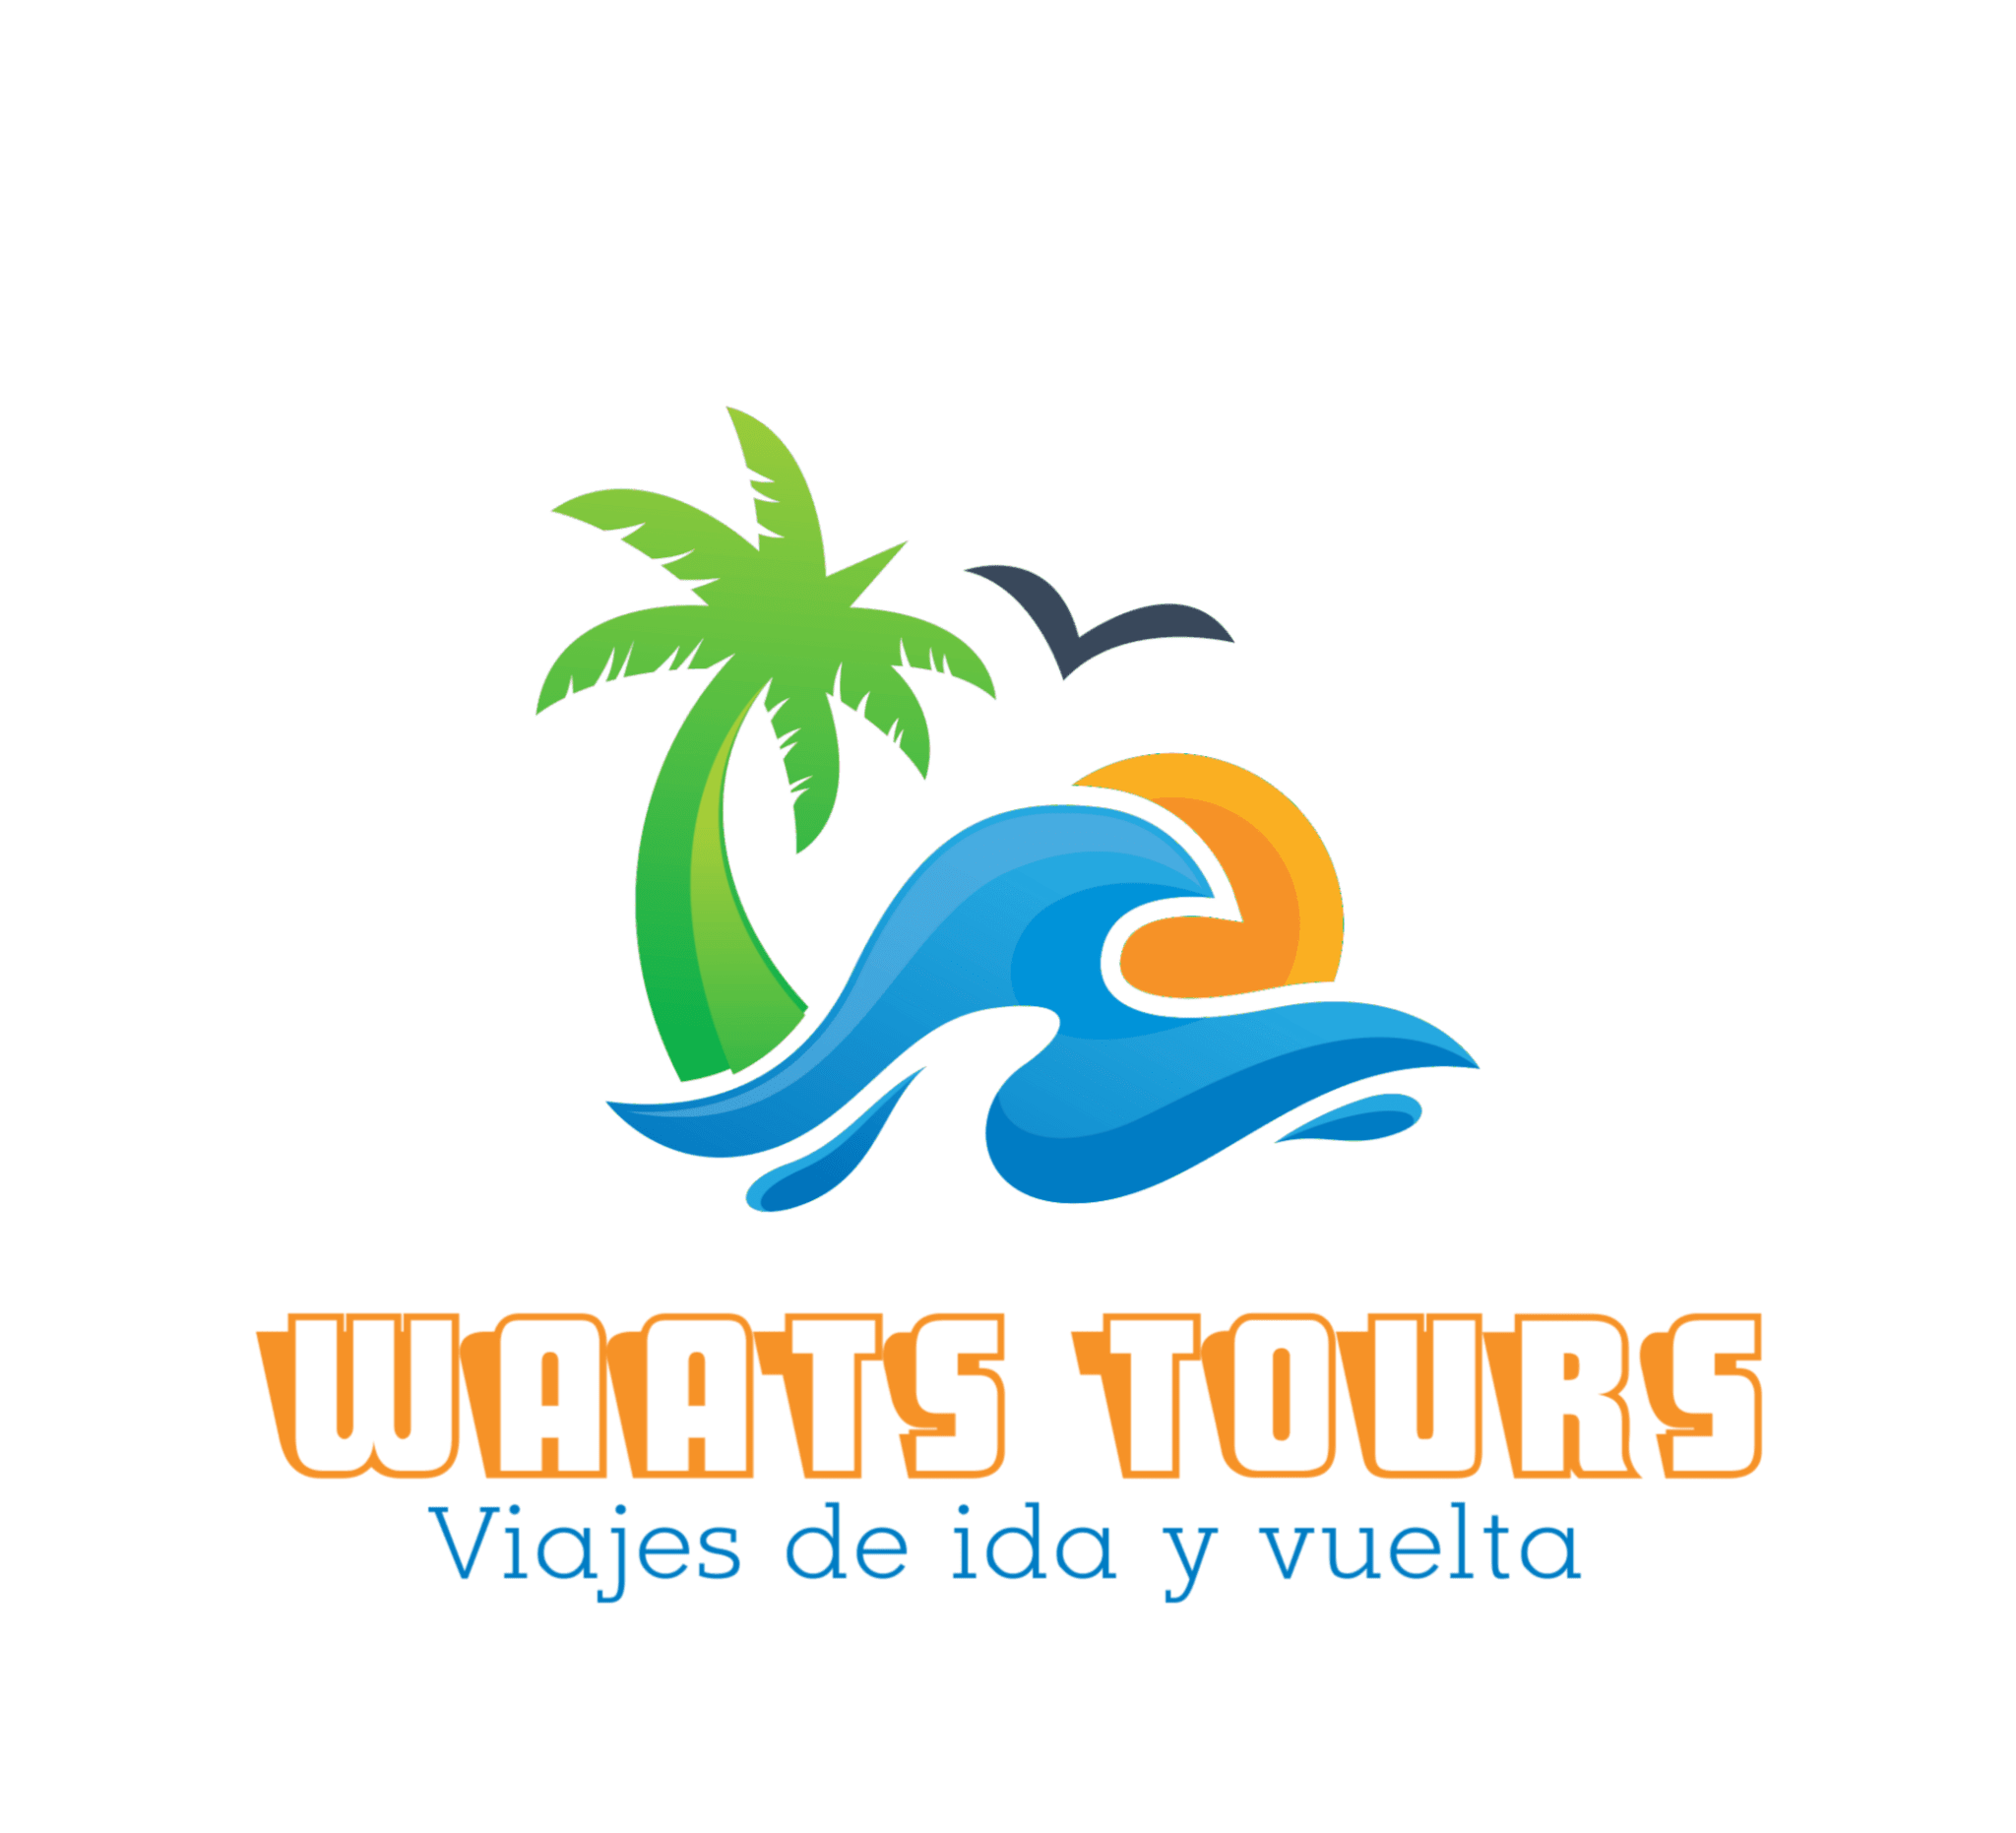 Waats'Tours